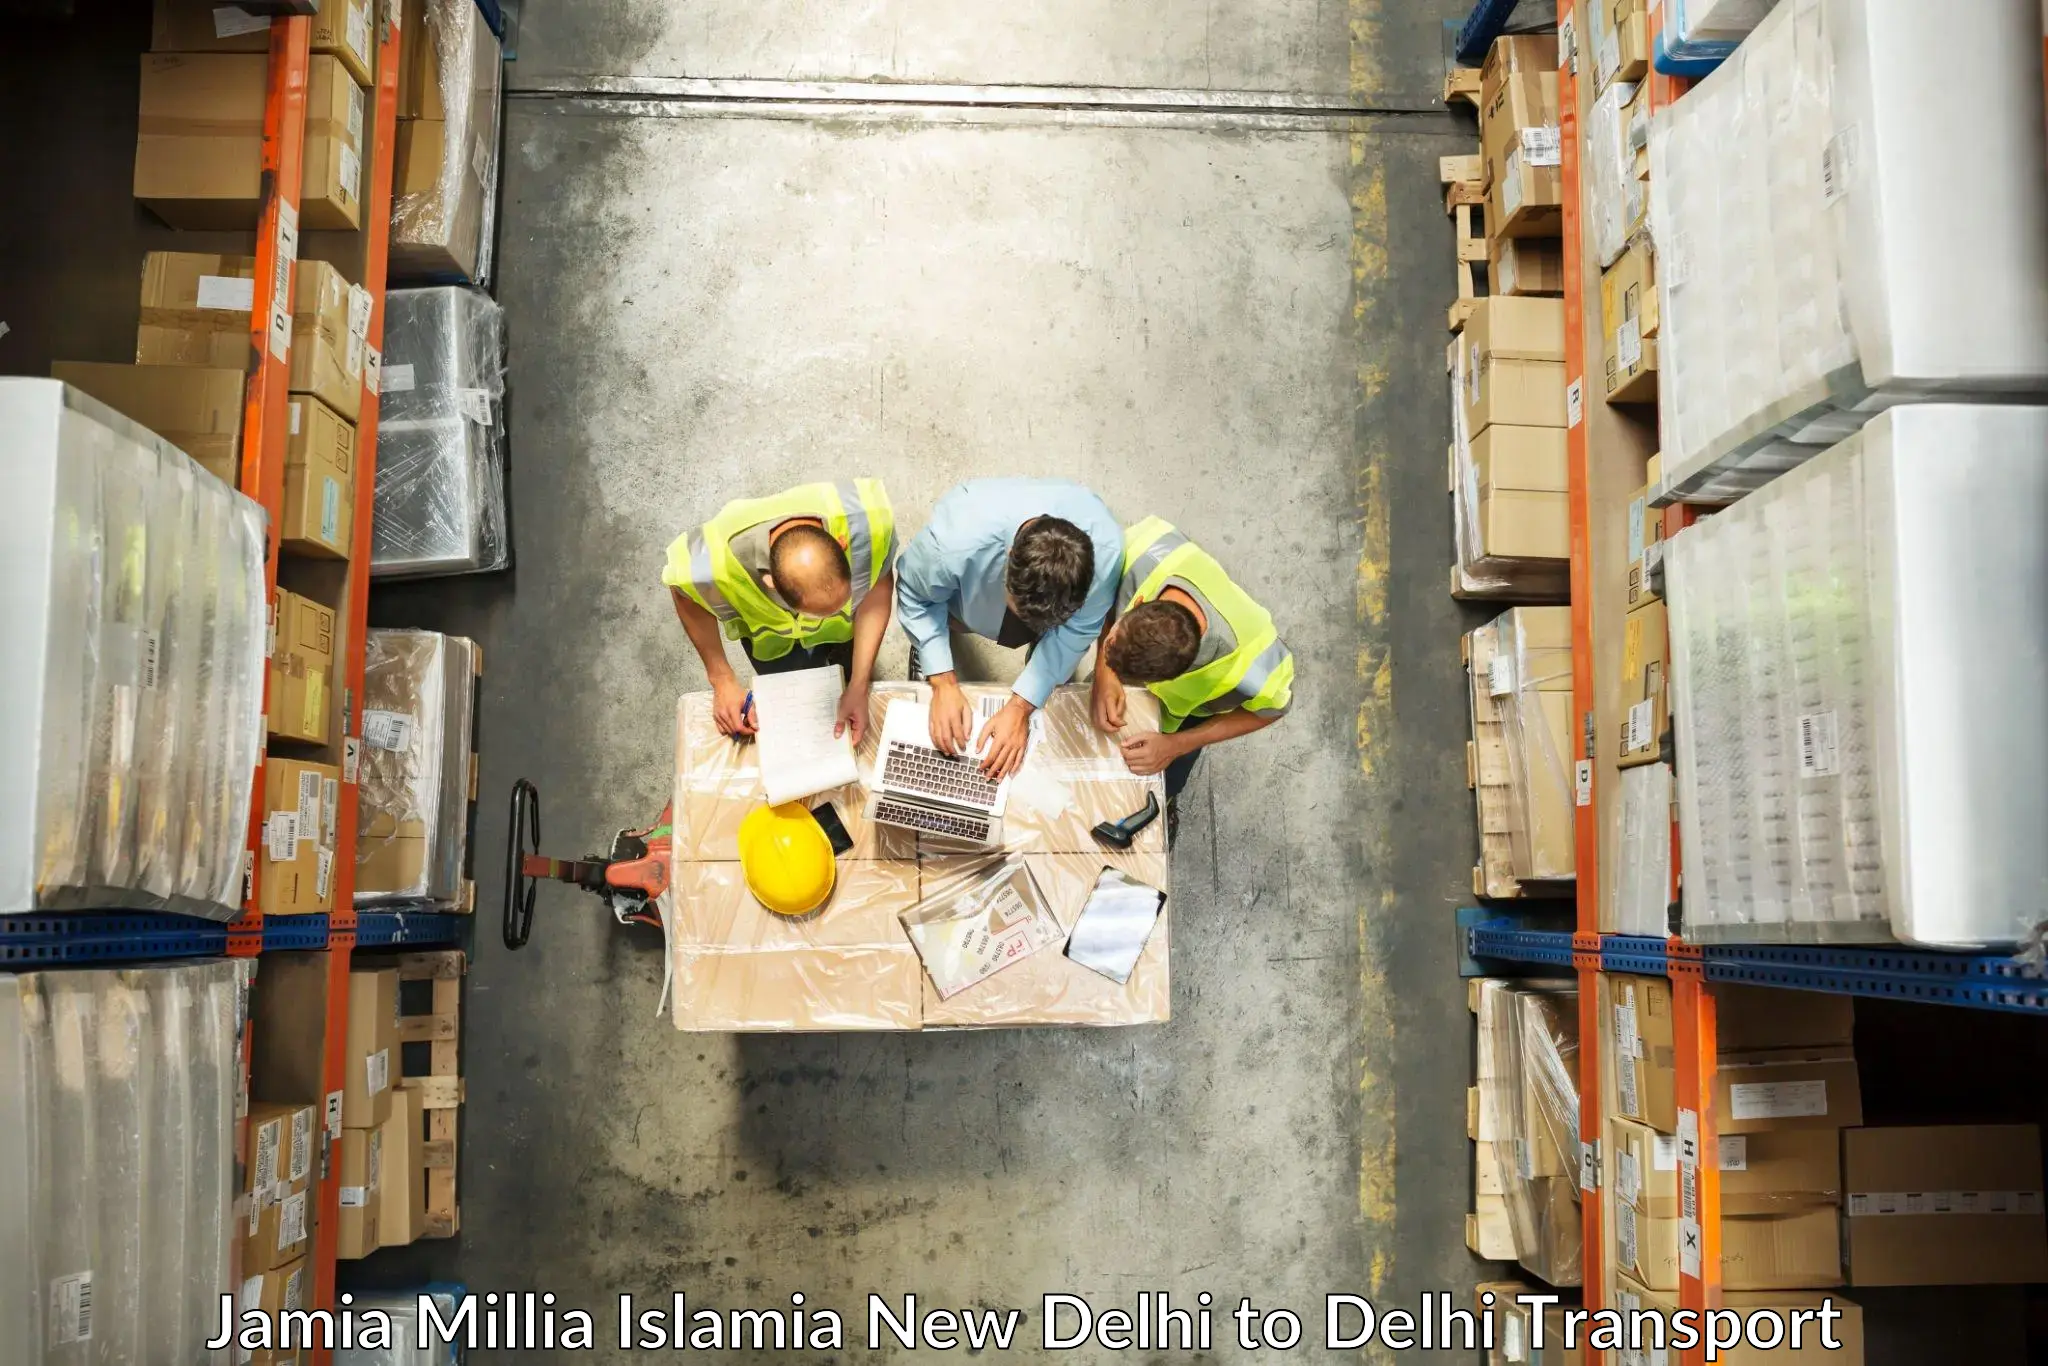 Shipping partner Jamia Millia Islamia New Delhi to Jamia Hamdard New Delhi